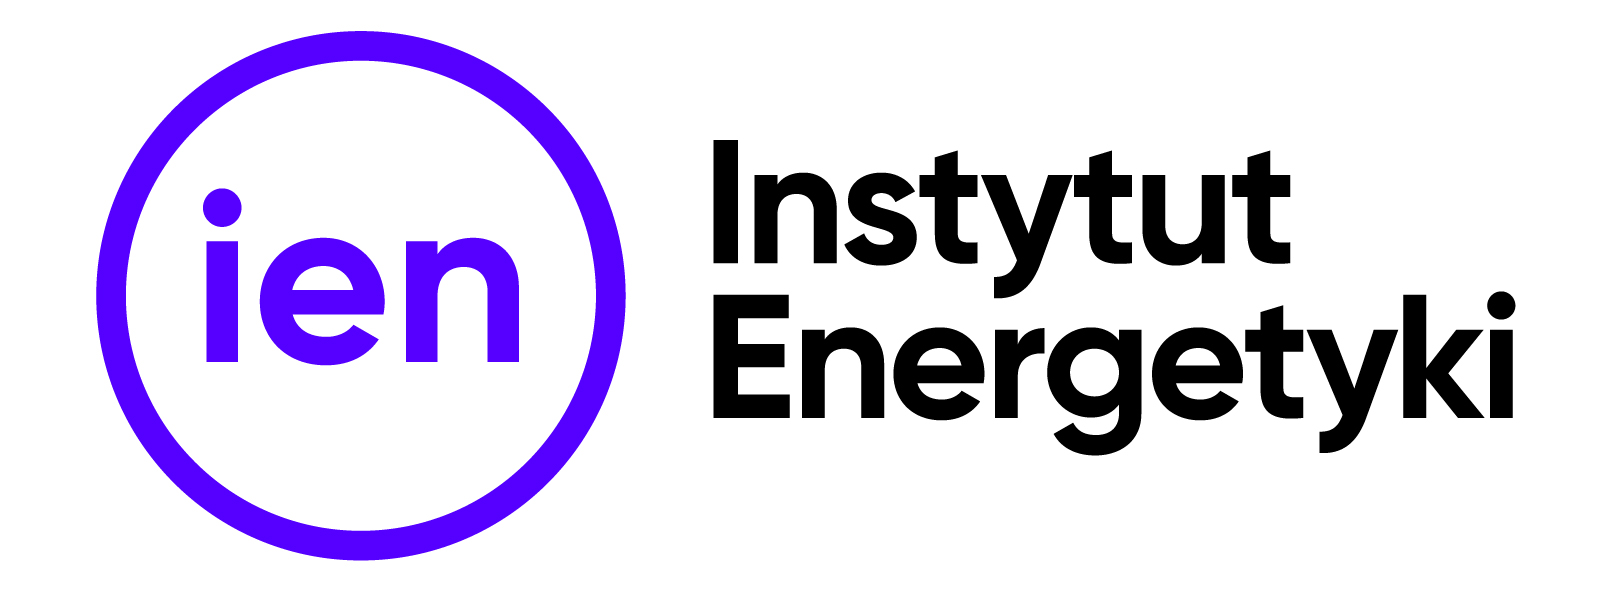 Instytut-Energetyki_kolorowy-na-bialym-tle.jpg